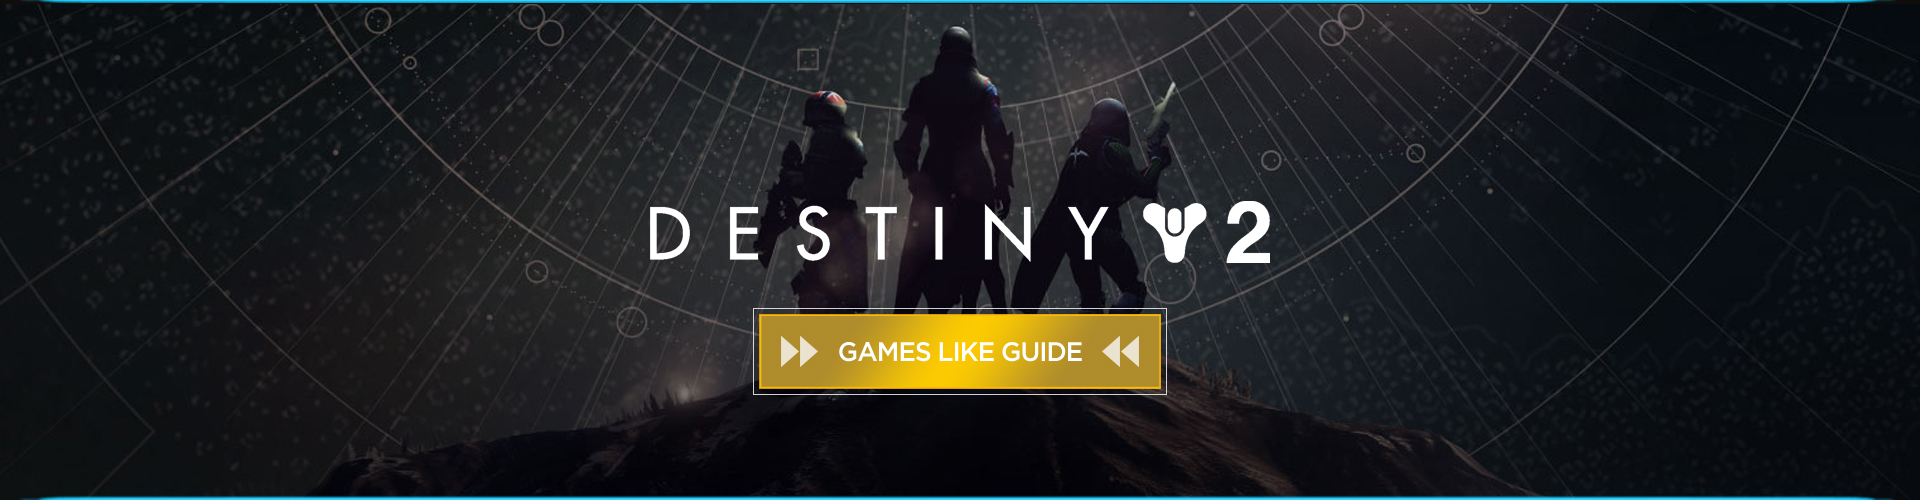 Destiny 2 Games Like Guide